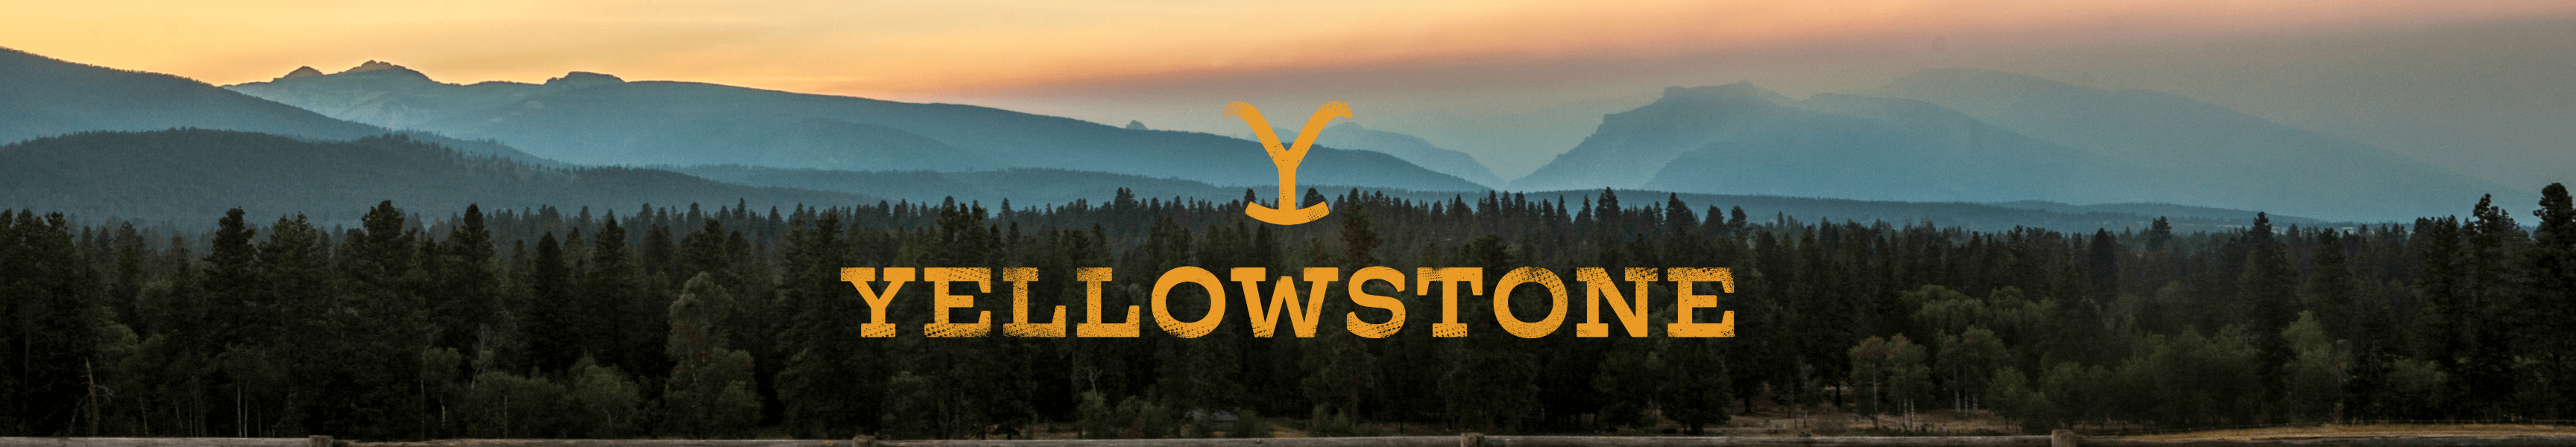 Vacances de Yellowstone